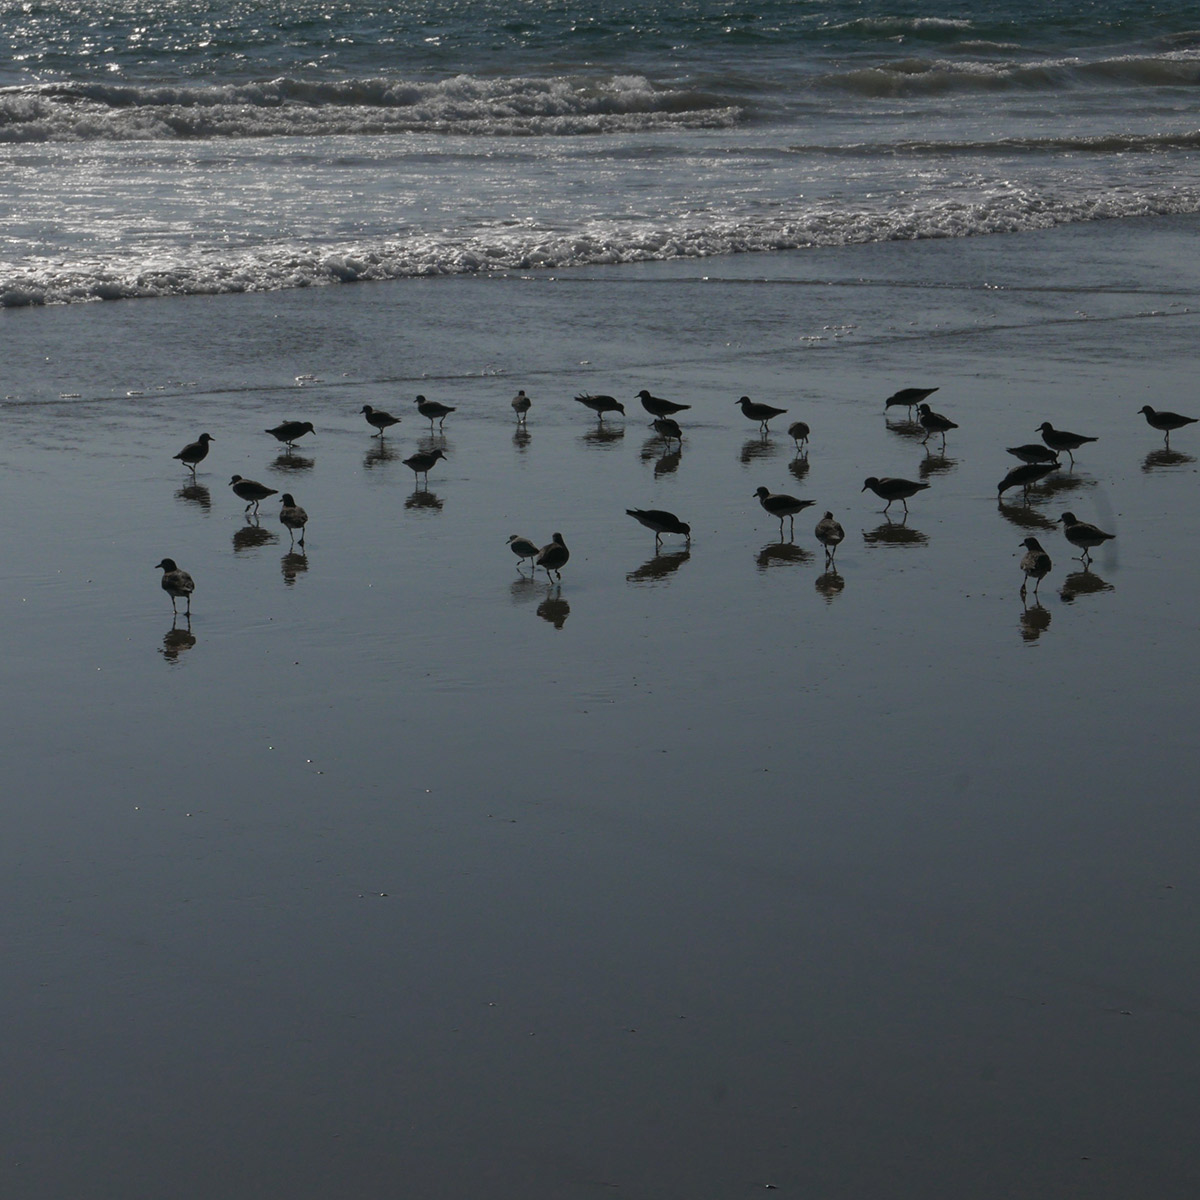 birds on a beach